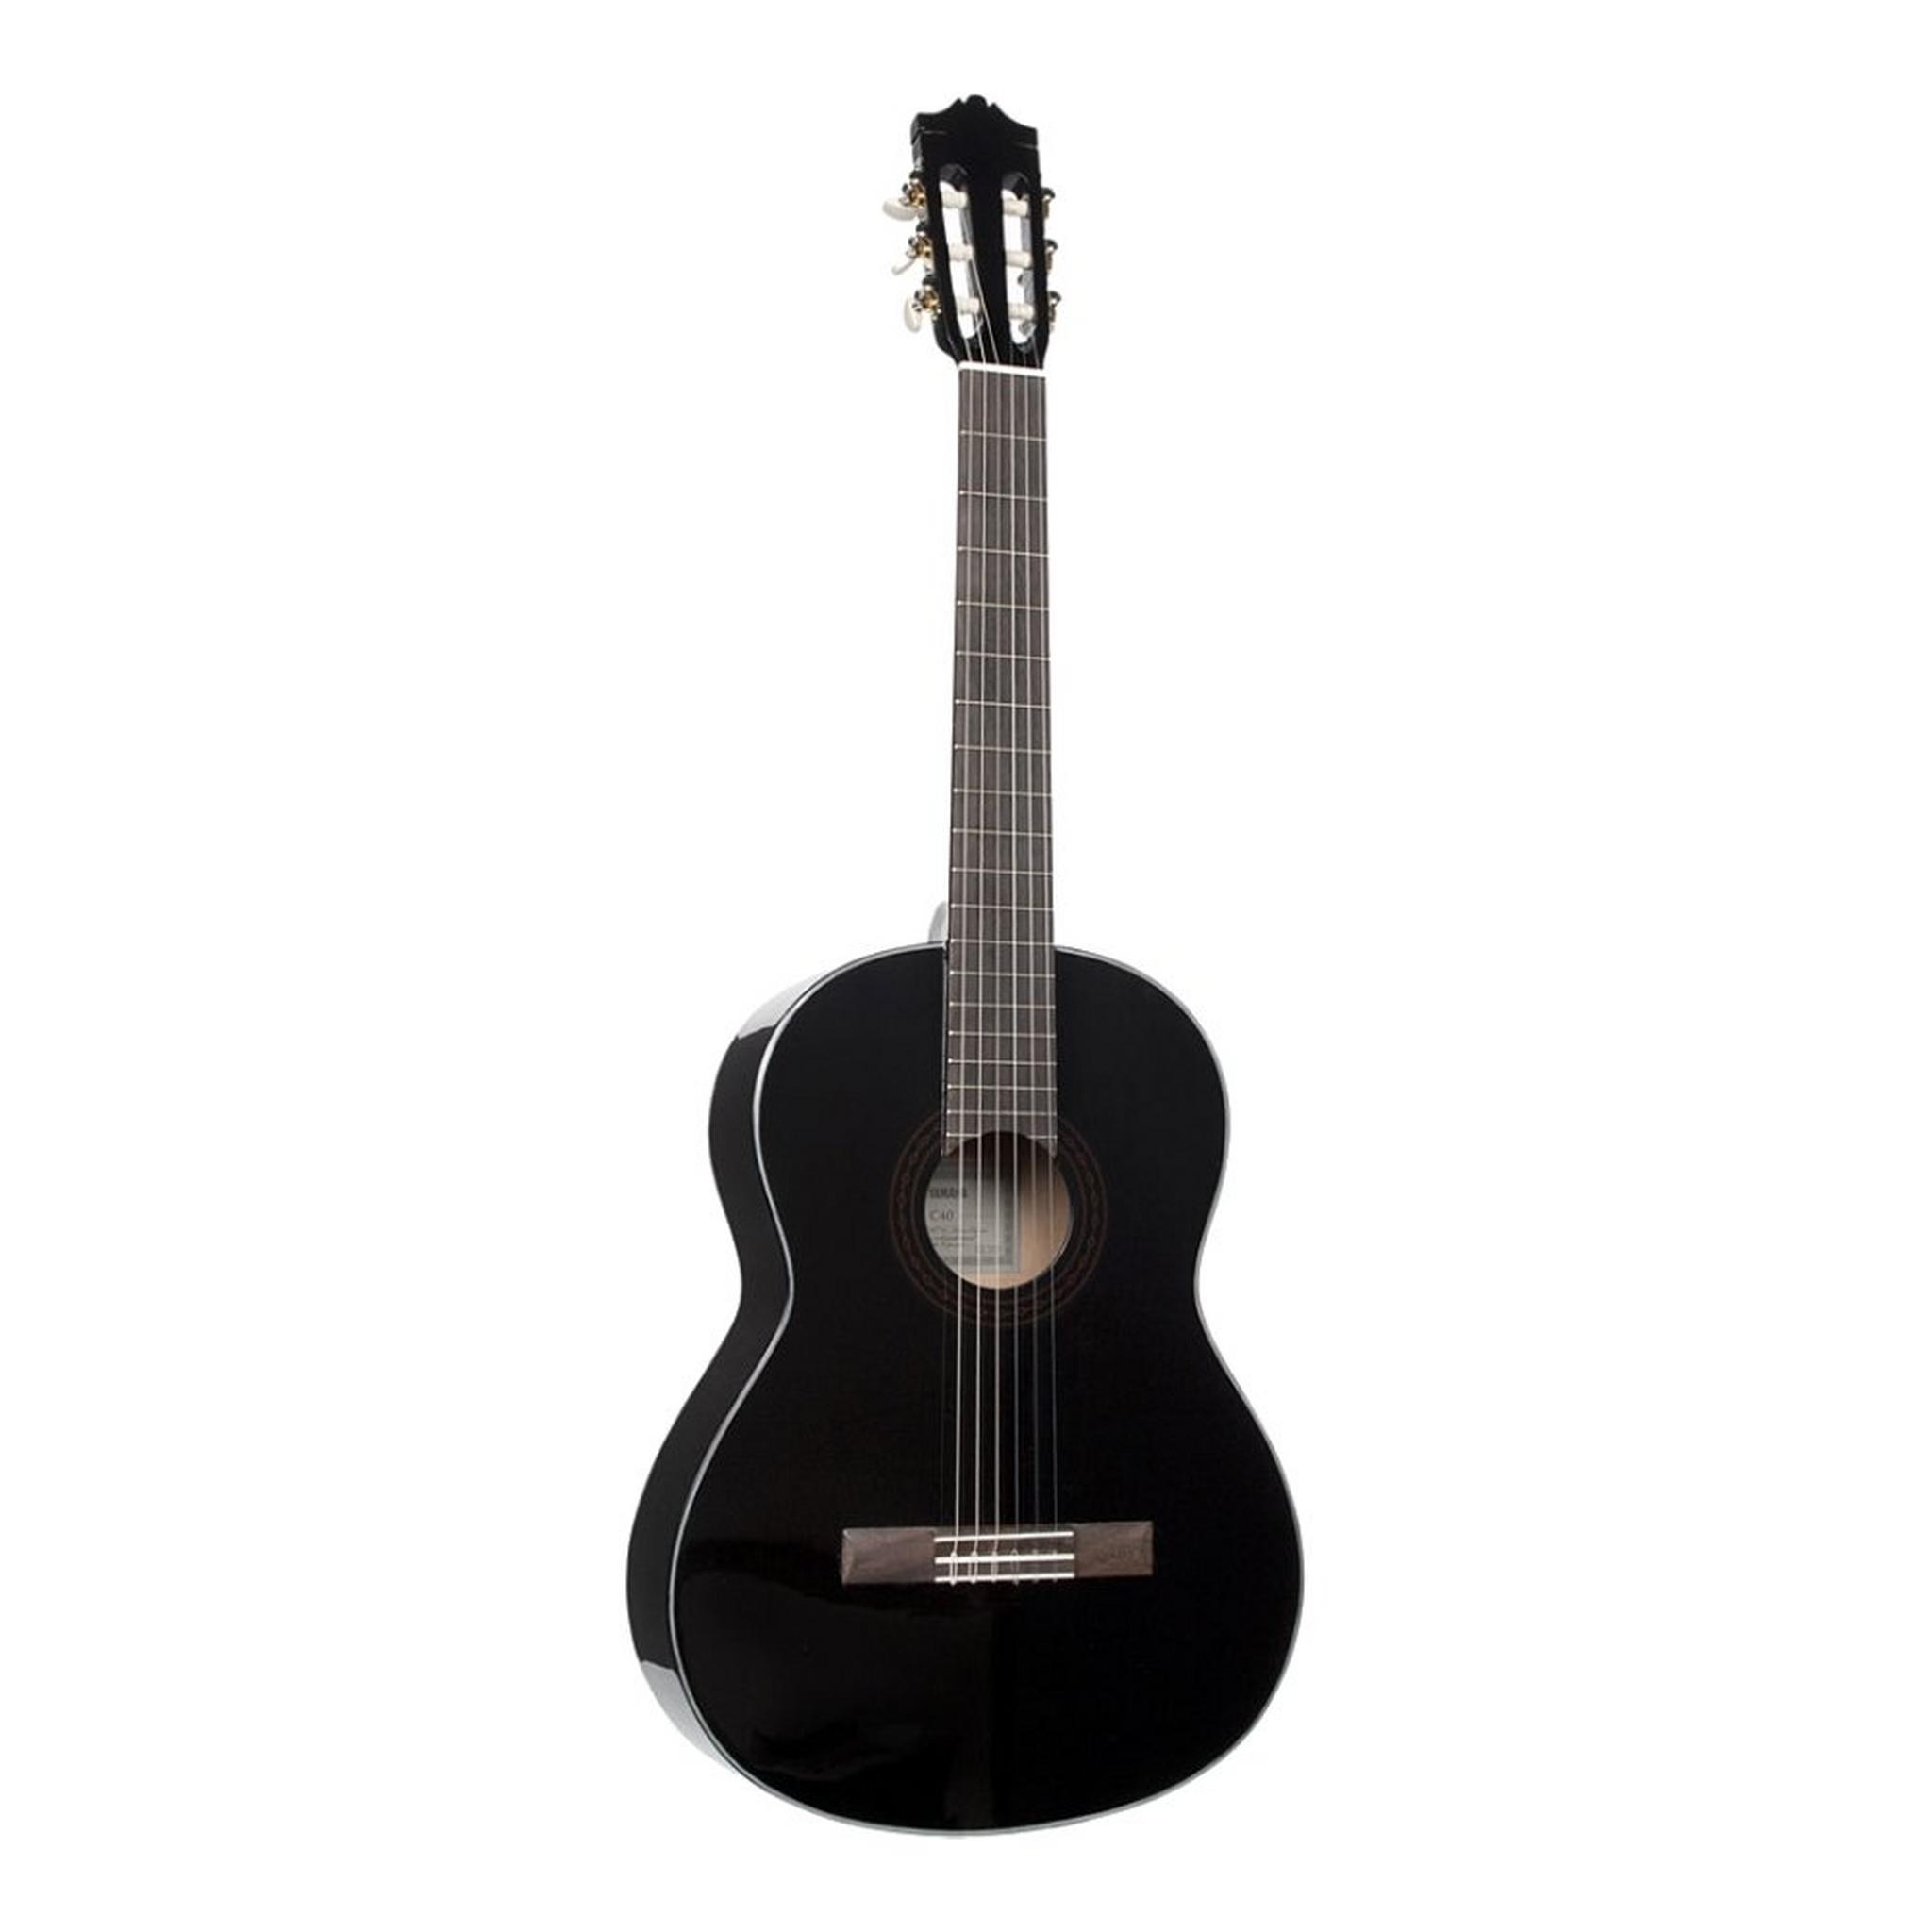 Yamaha C40 Classical Guitar - Black